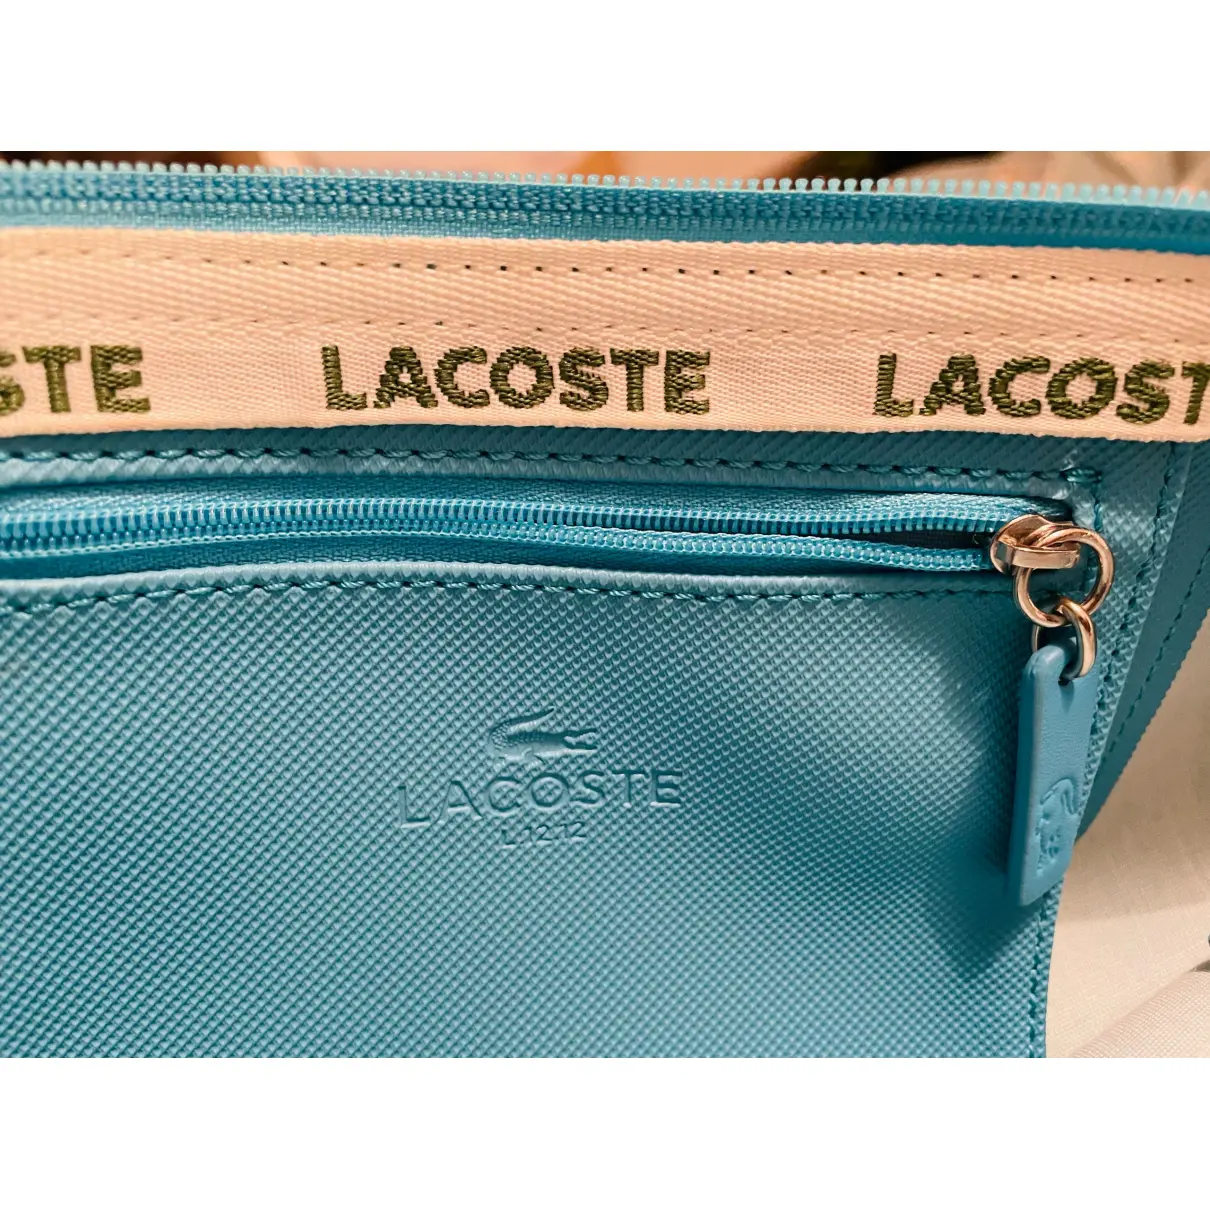 Luxury Lacoste Handbags Women